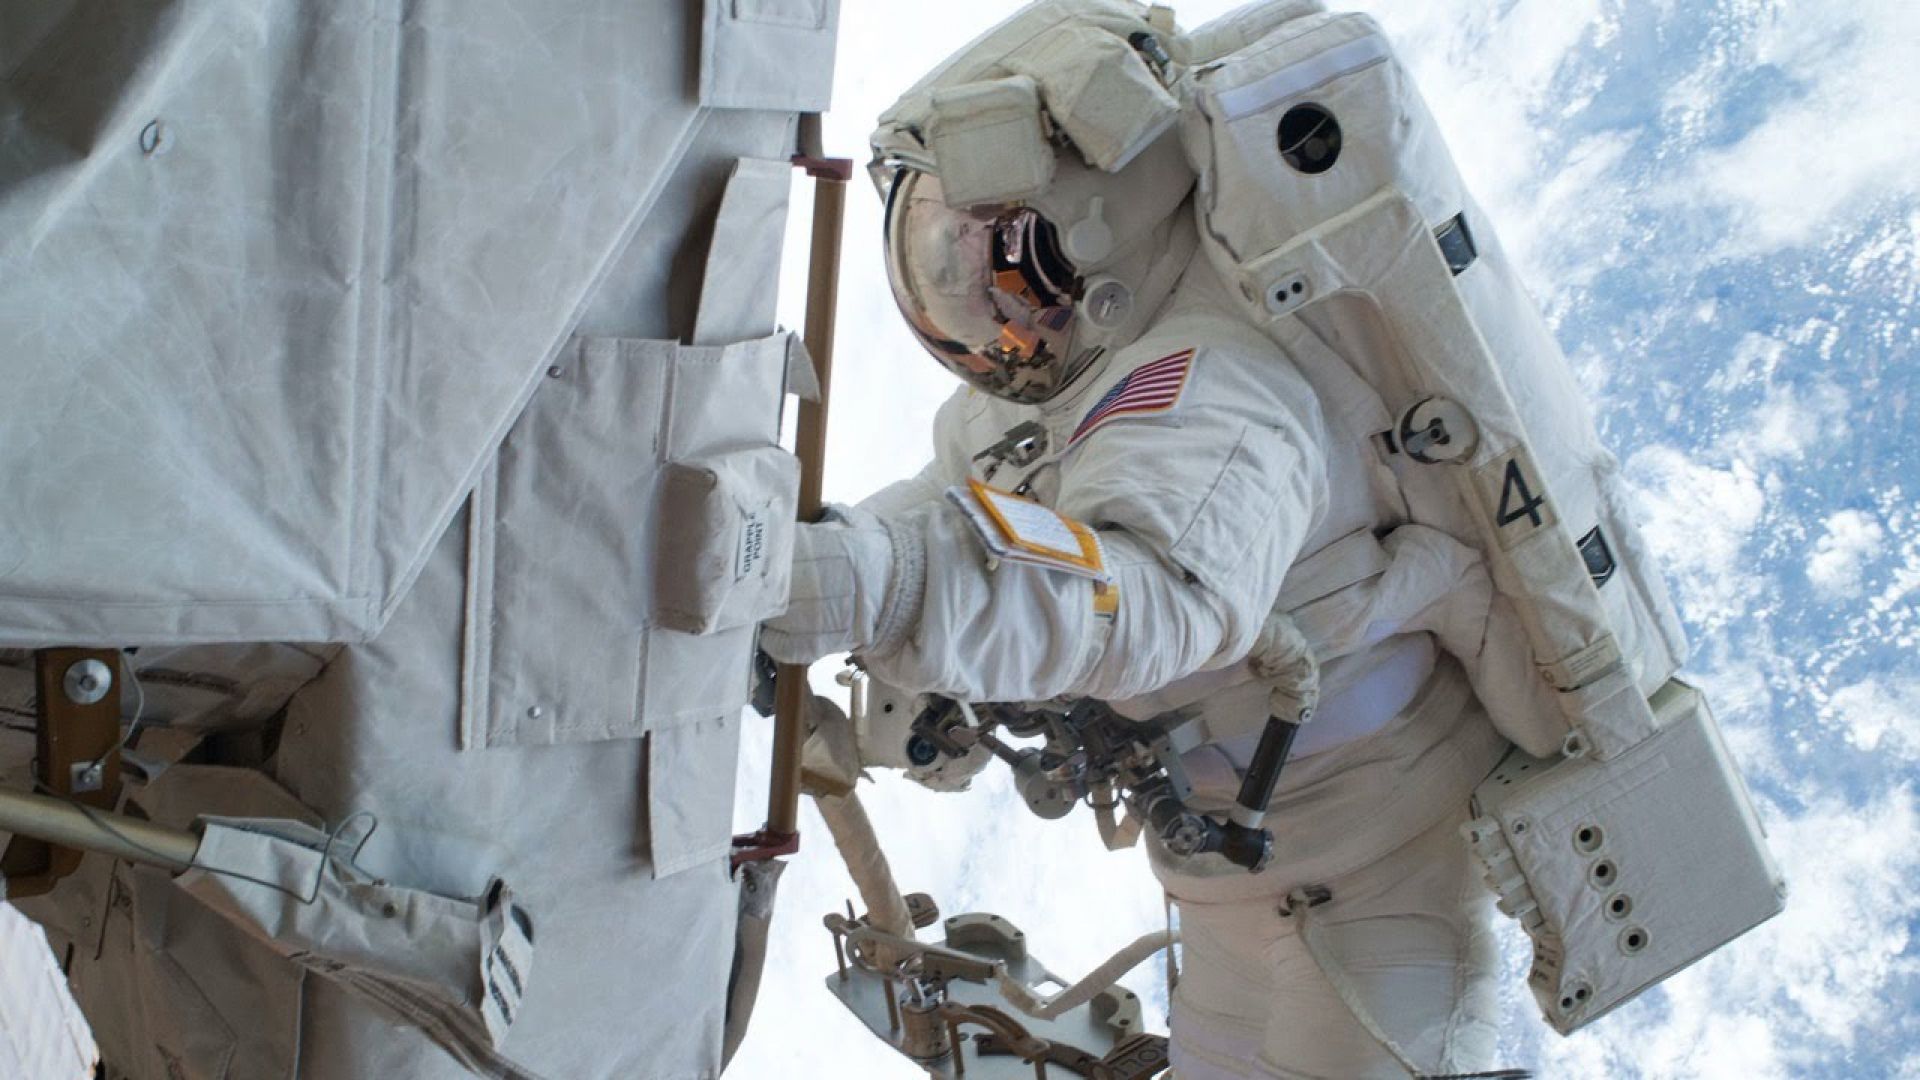 Астронавти могат да имат проблеми с имунната система поради липсата на гравитация